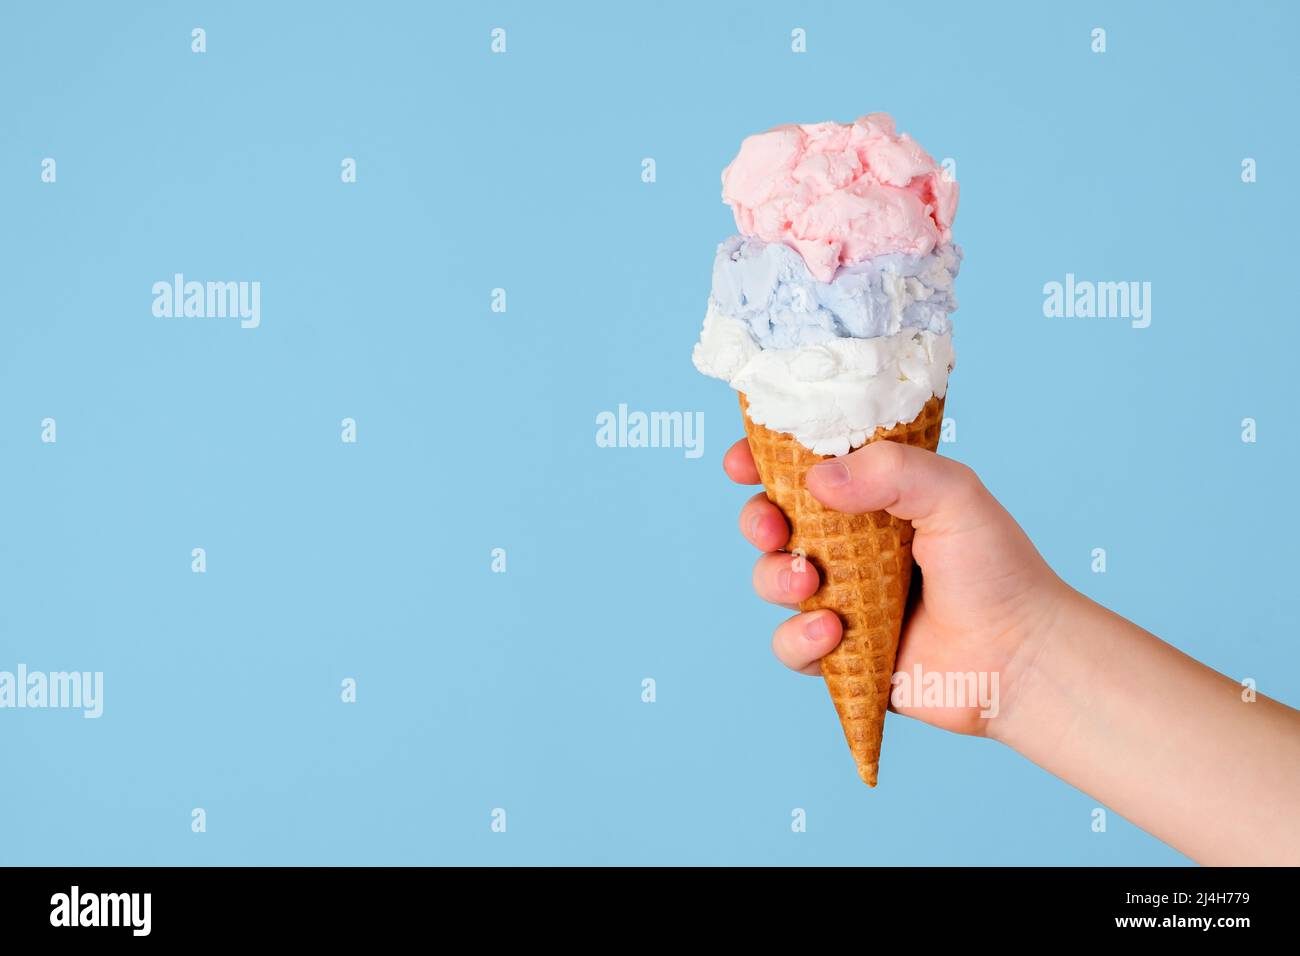 Eis in einem Kegel mit drei verschiedenen Geschmacksrichtungen, die die Hand eines Kindes auf einem blauen Hintergrund halten. Gesundheitliche Vorteile Eis-Konzept Stockfoto